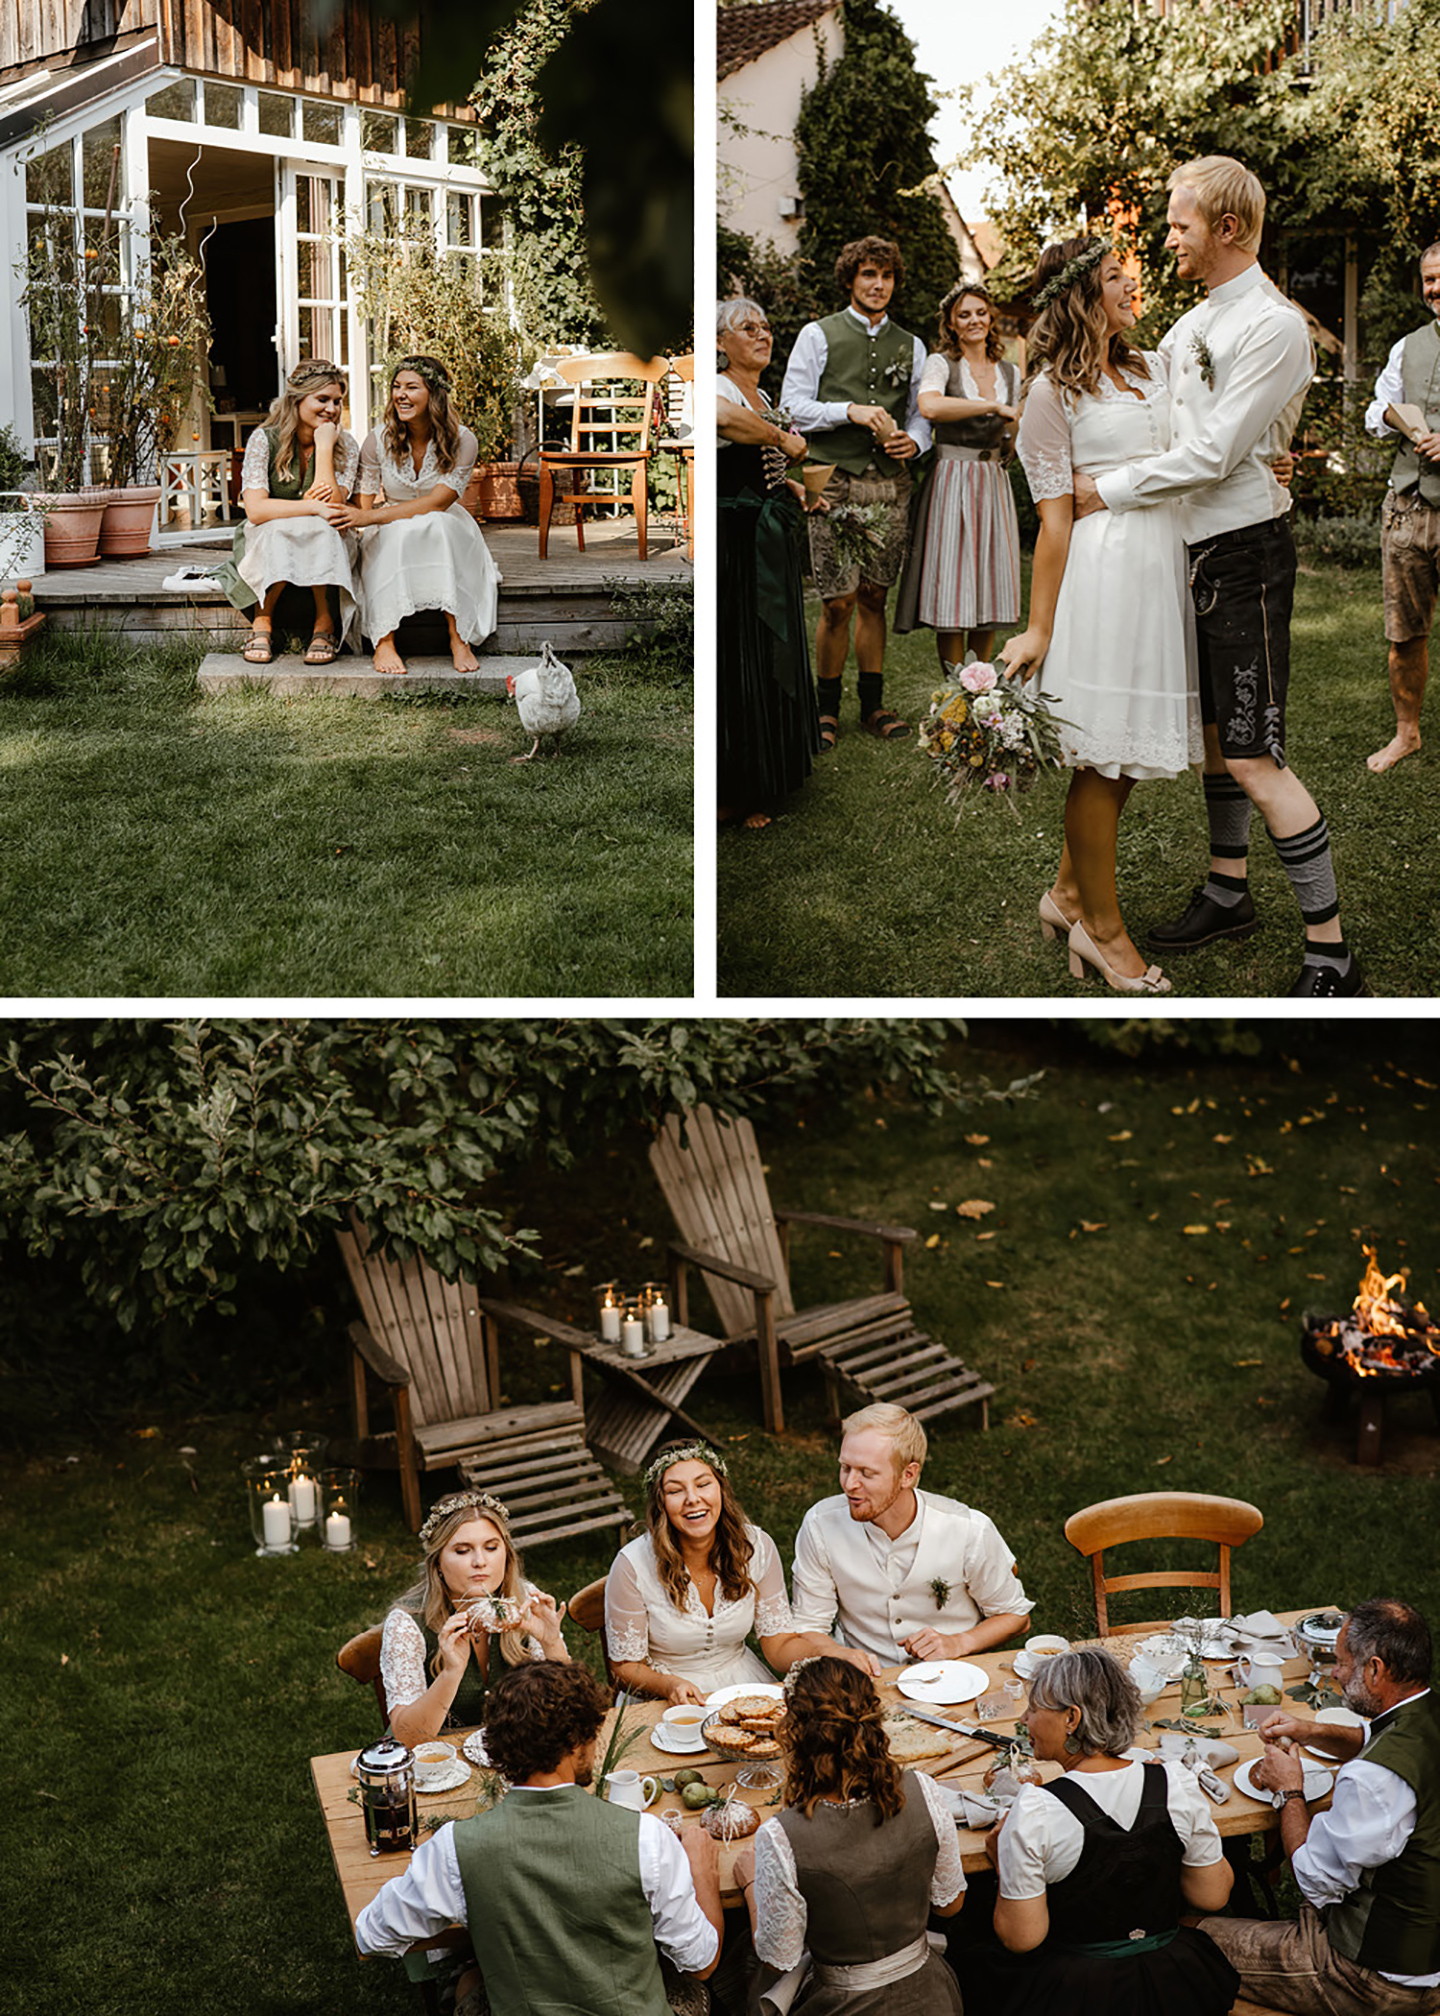 Die Hochzeit findet im grünen Garten statt, in dem die Gäste ausgelassen feiern und sich über das Hochzeitspaar freuen. Zusammen sitzen alle am Tisch und lachen. 